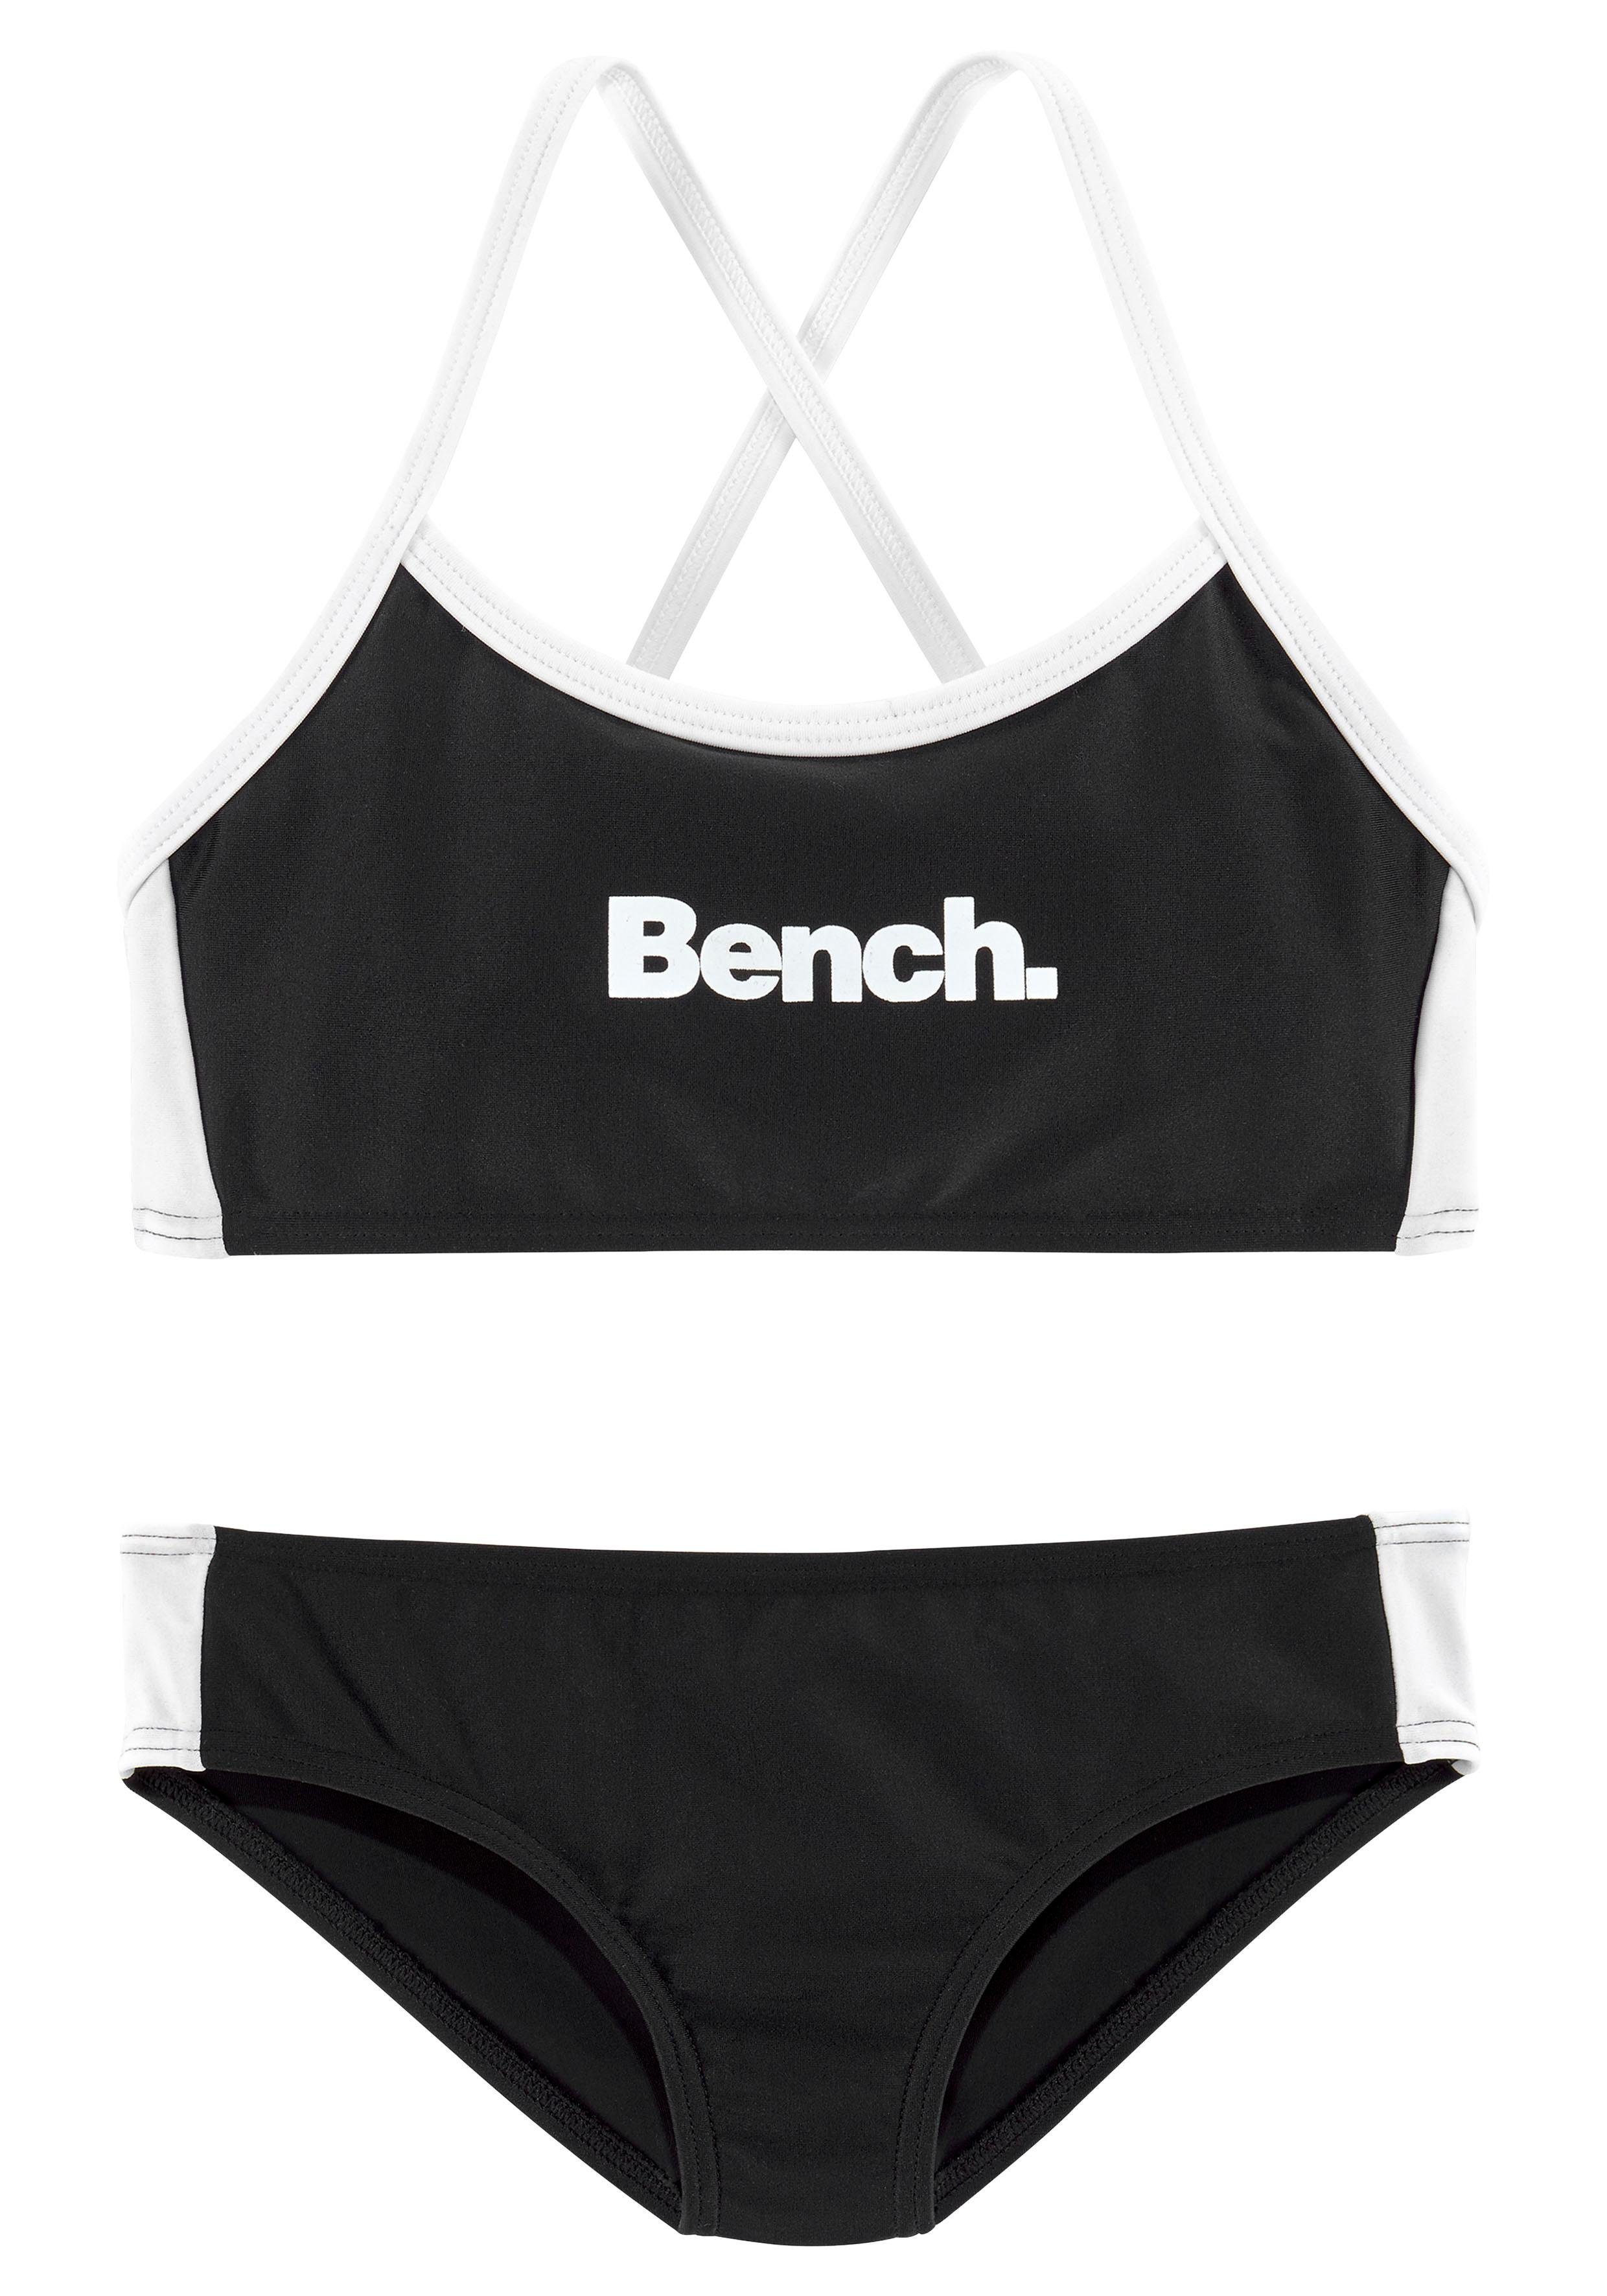 Bustier-Bikini gekreuzten Trägern mit schwarz-weiß Bench.